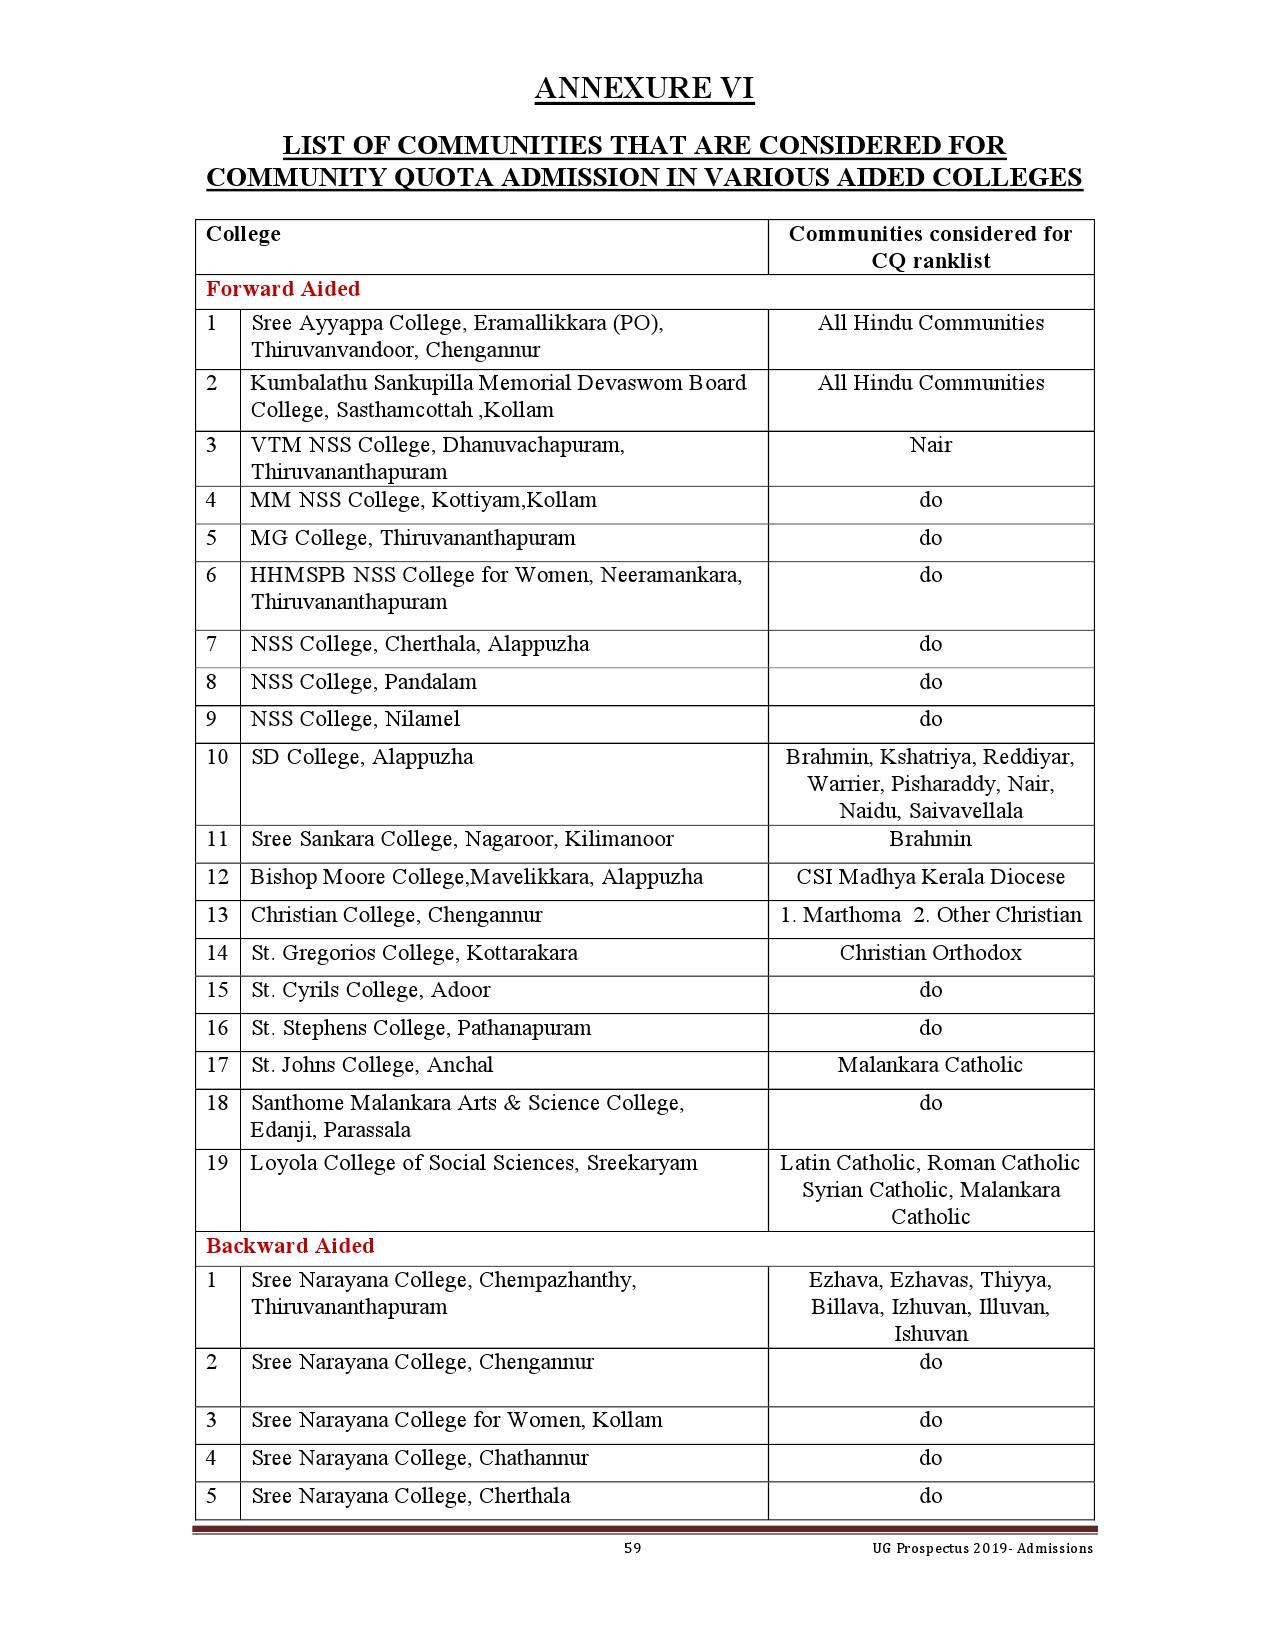 Kerala University UG Admission Prospectus 2019 - Notification Image 59